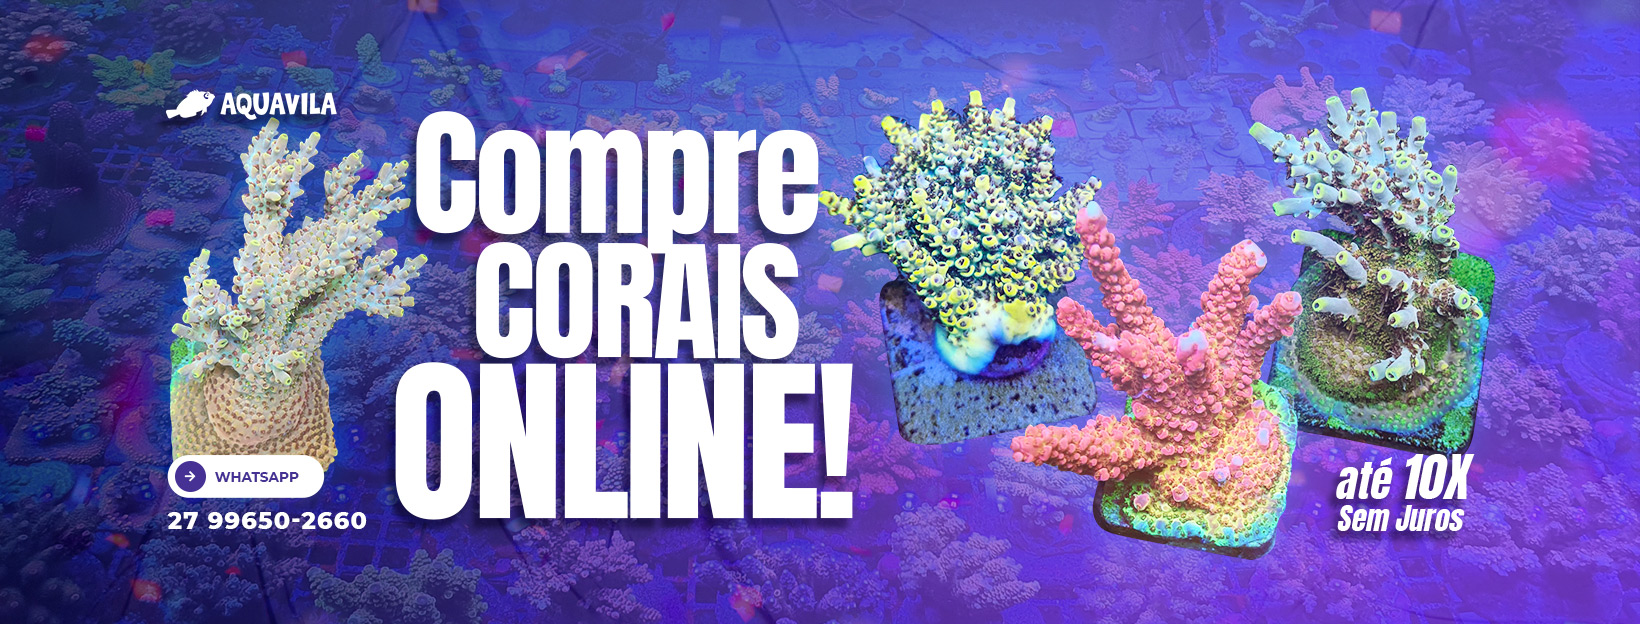 Compre corais online